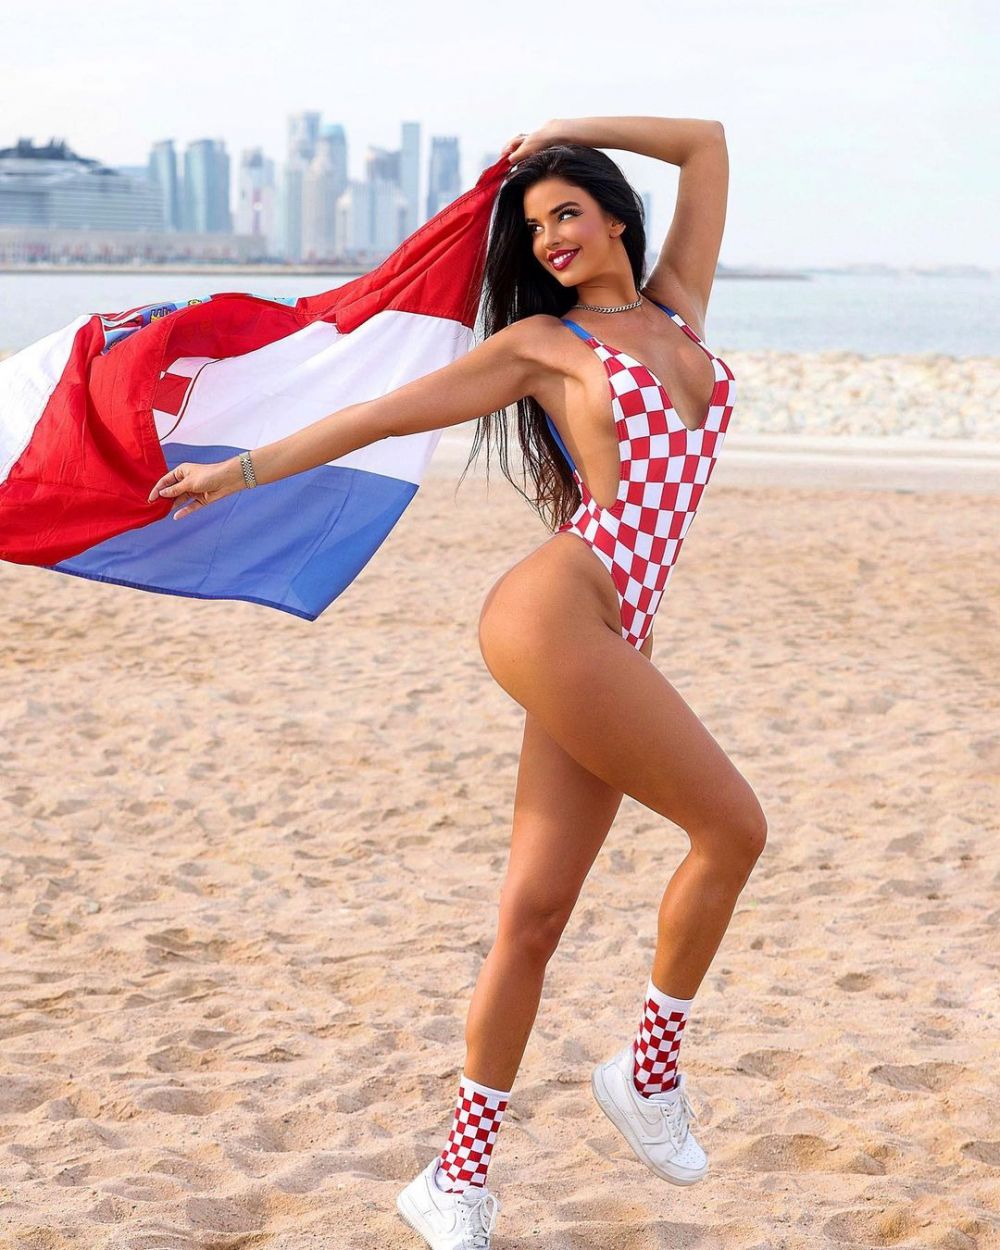 ”Miss Croația” a reacționat, după ce s-a zvonit că ar fi gata să se dezbrace pentru Modric&Co._46